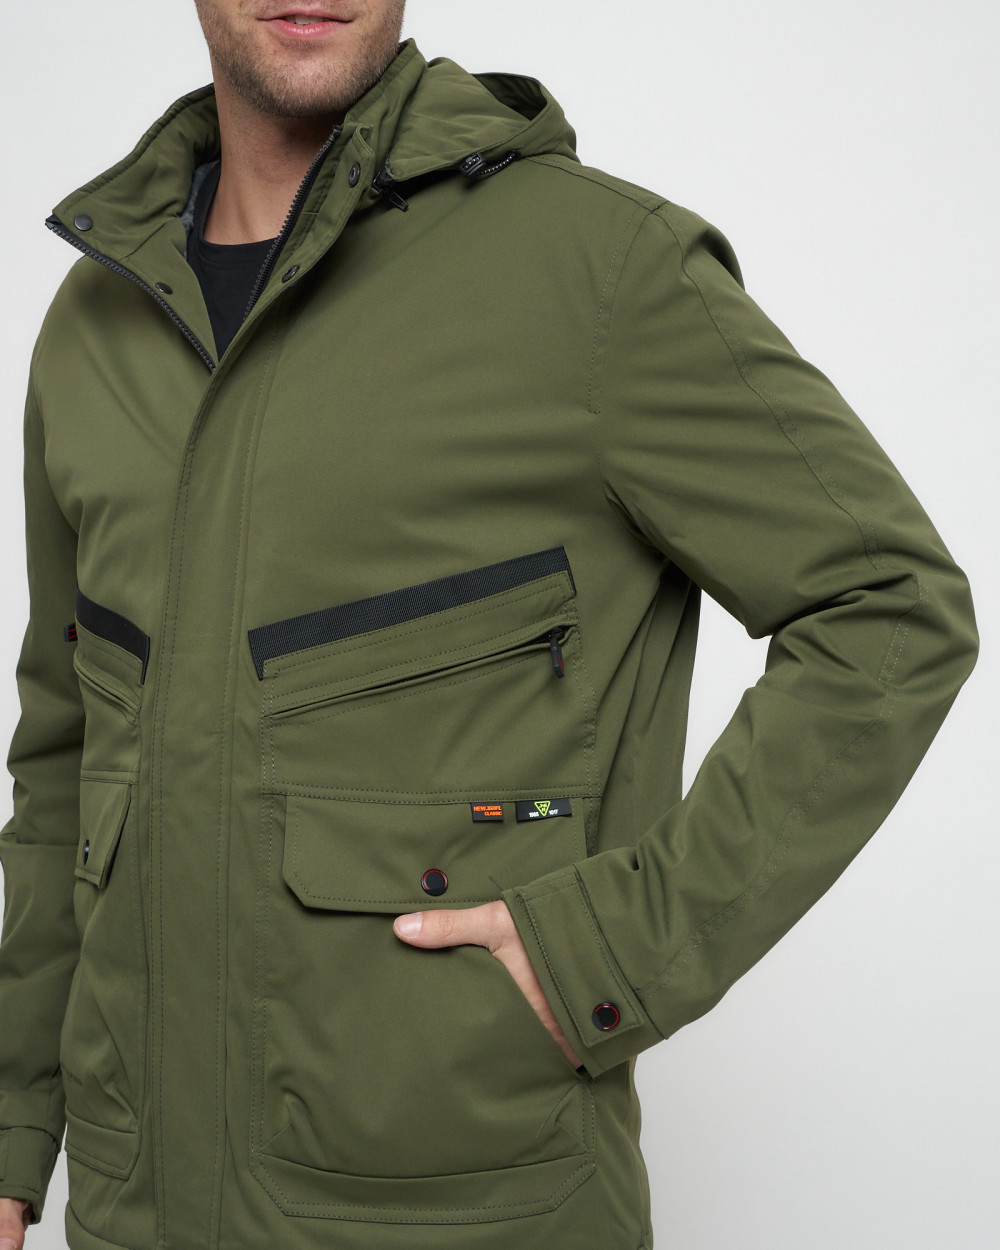 Купить куртку мужскую спортивную весеннюю оптом от производителя недорого в Москве 8596Kh 1